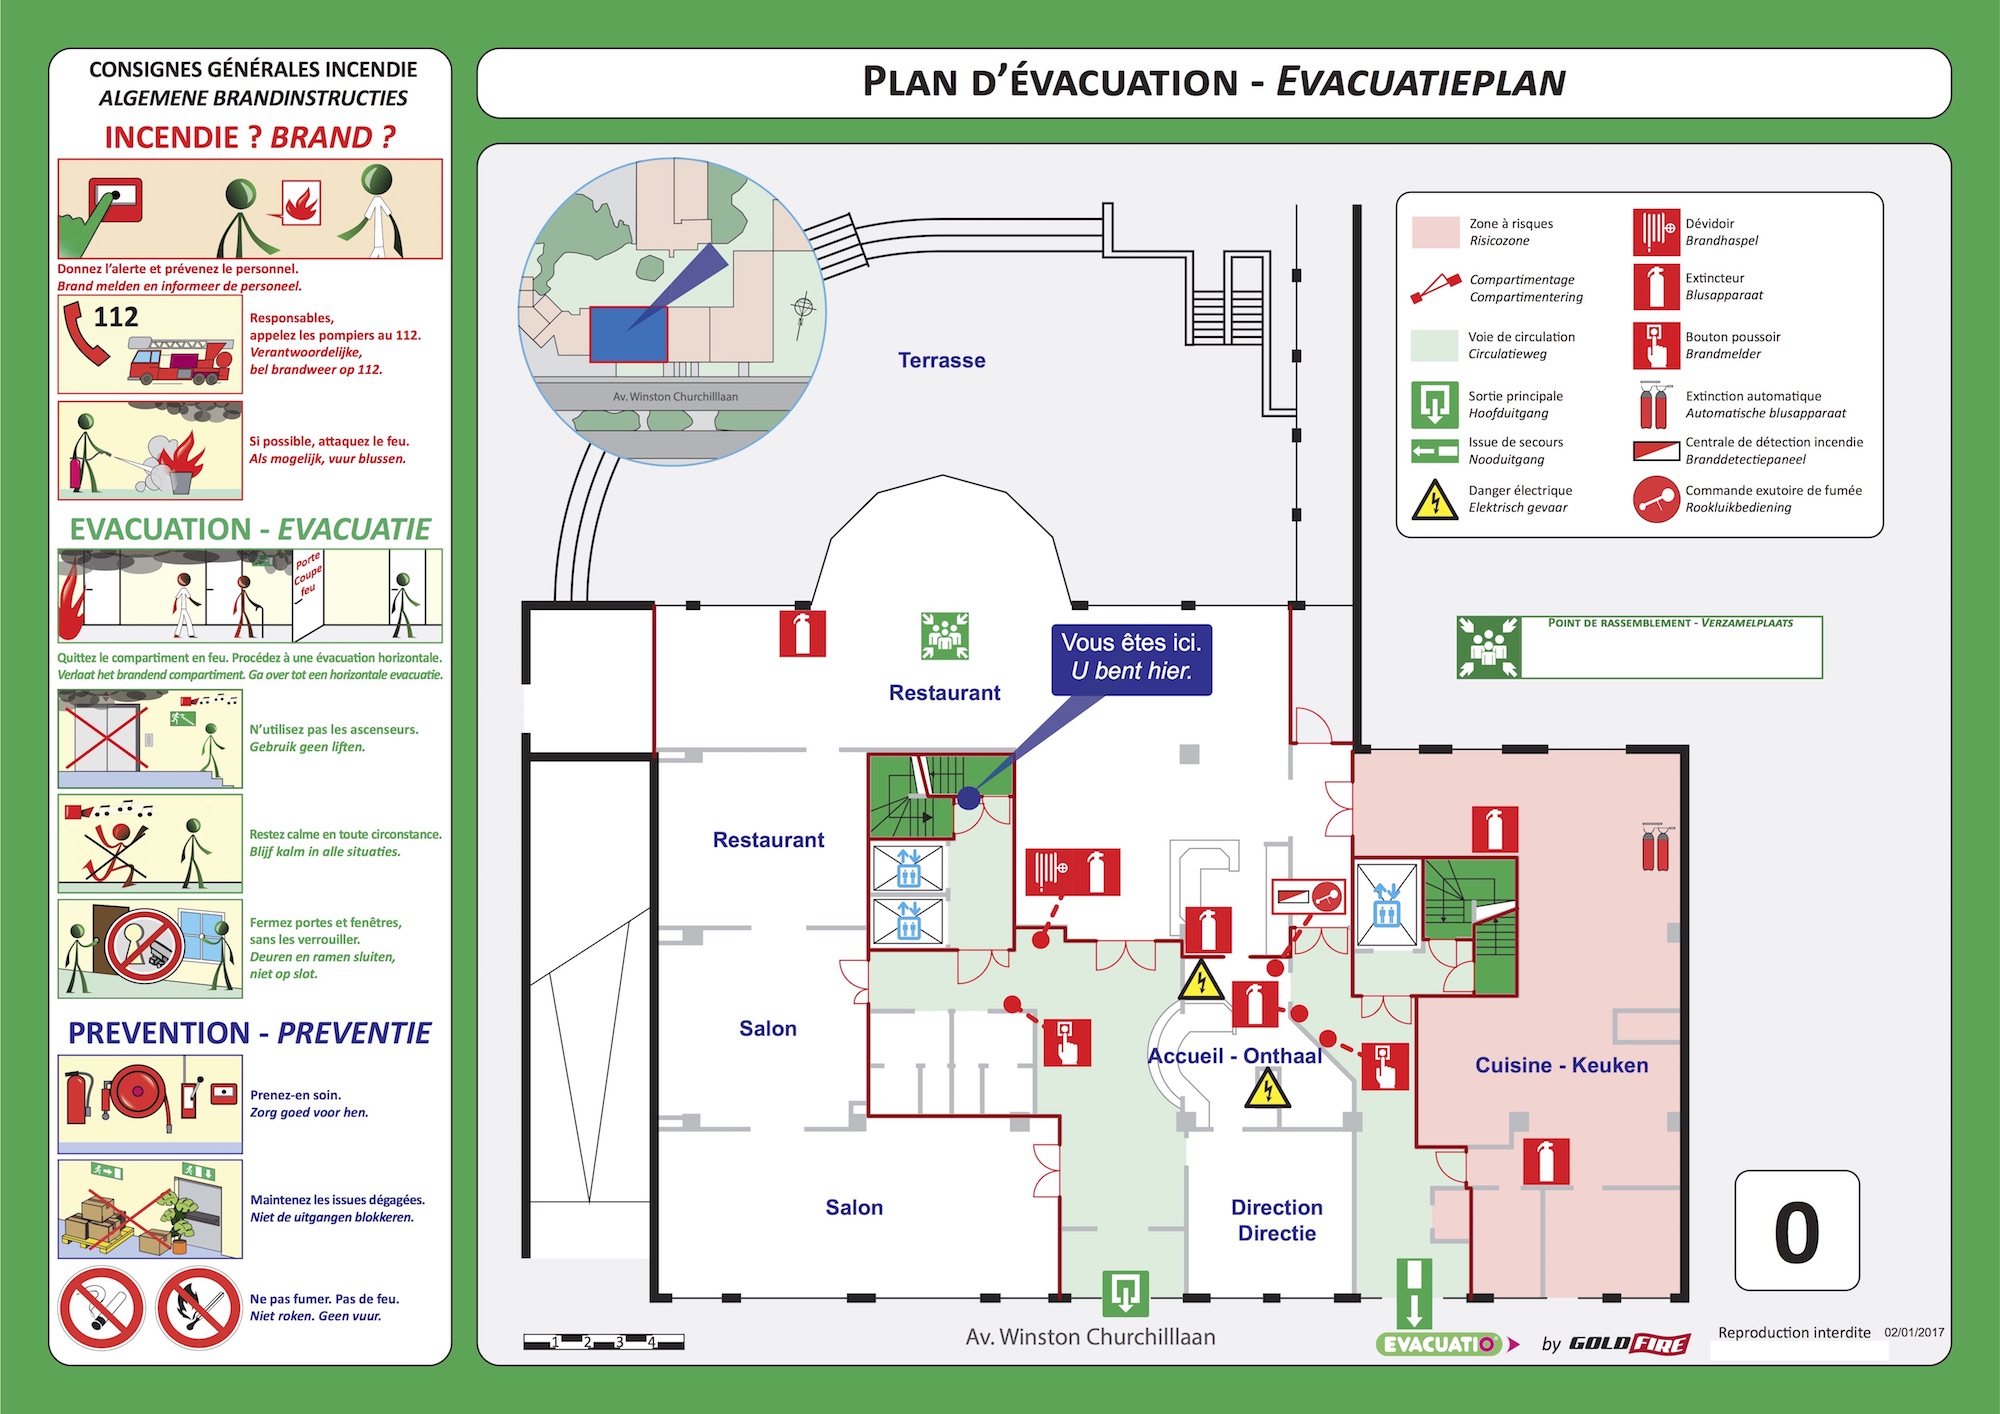 Nursing home evacuation plan